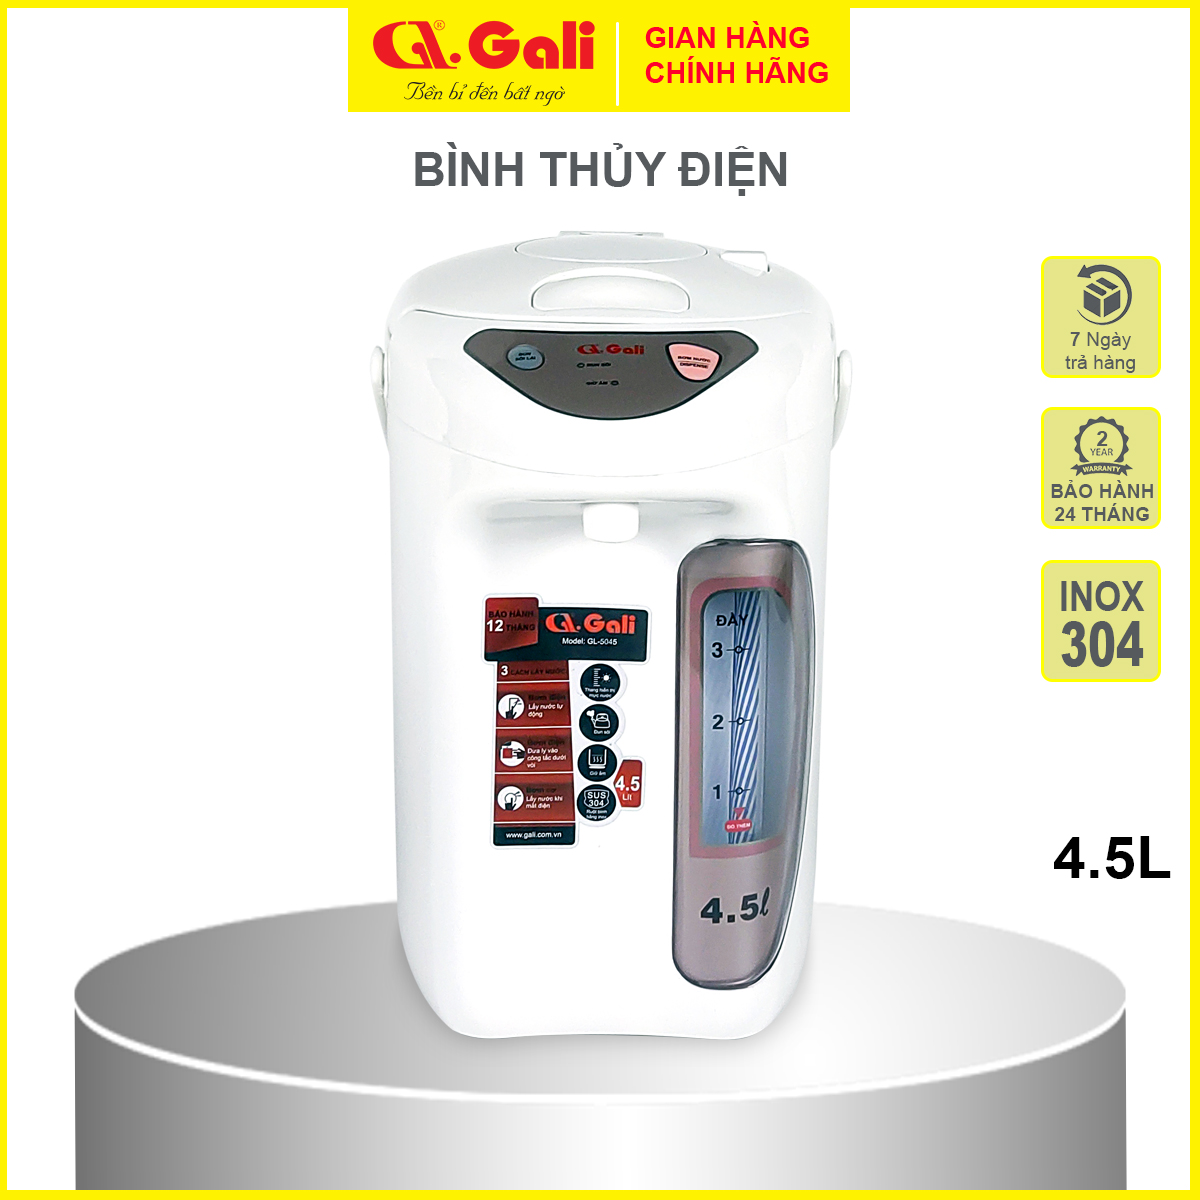 Bình thủy điện Gali GL-5045 dung tích 4.5 lít, phích cấu tạo 2 lớp thân ngoài nhựa, ruột inox 304, hàng chính hãng 100% Gali, bảo hành 24 tháng